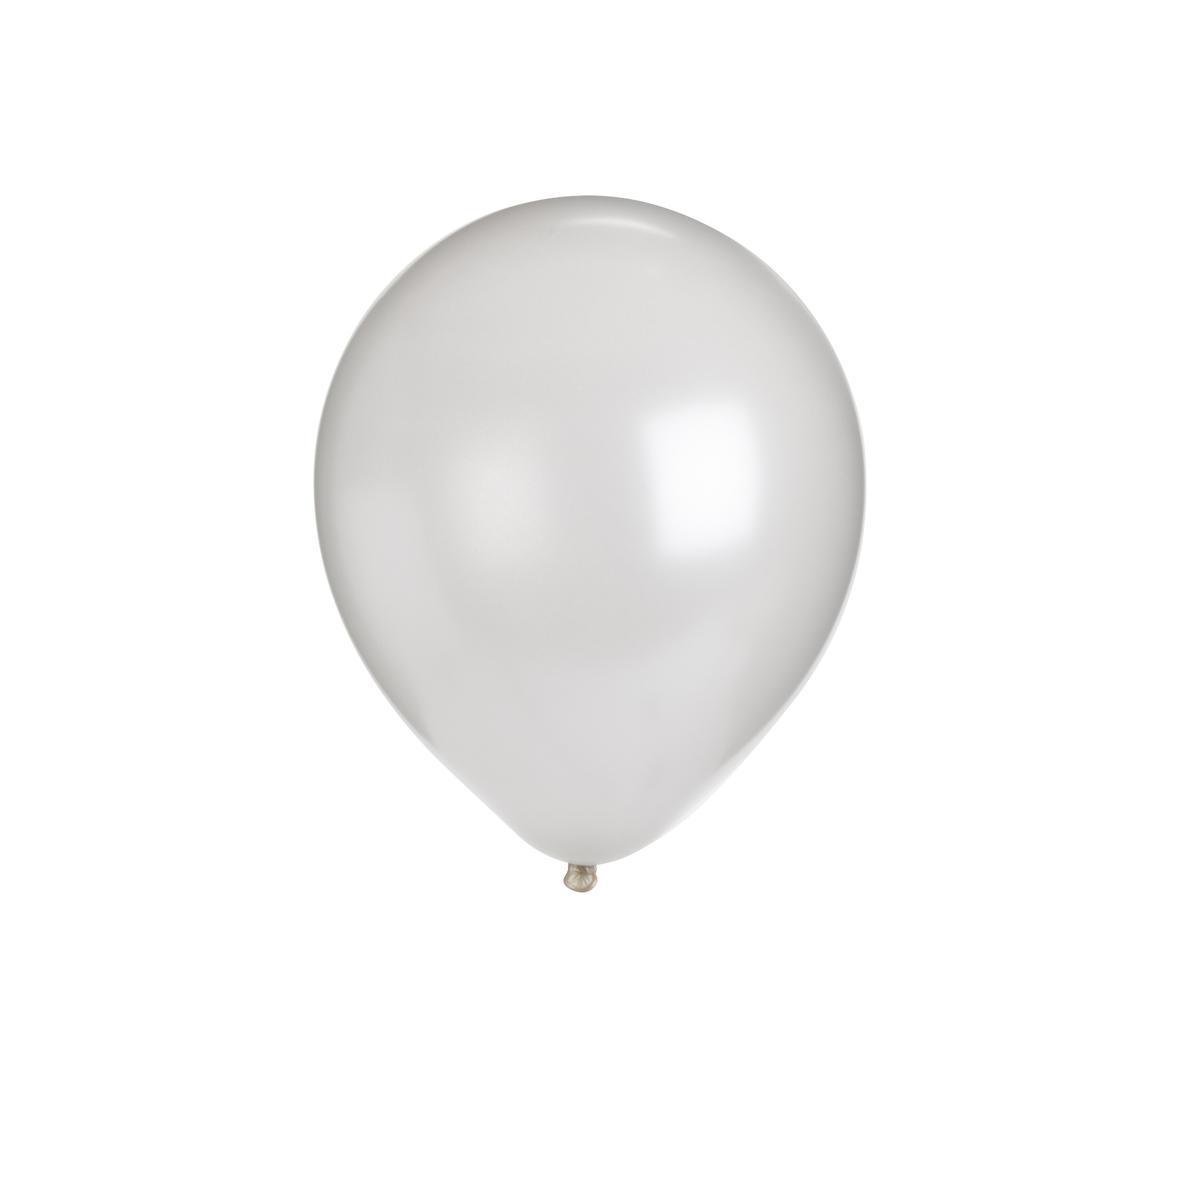 24 ballons nacrés - ø 30 cm - Blanc